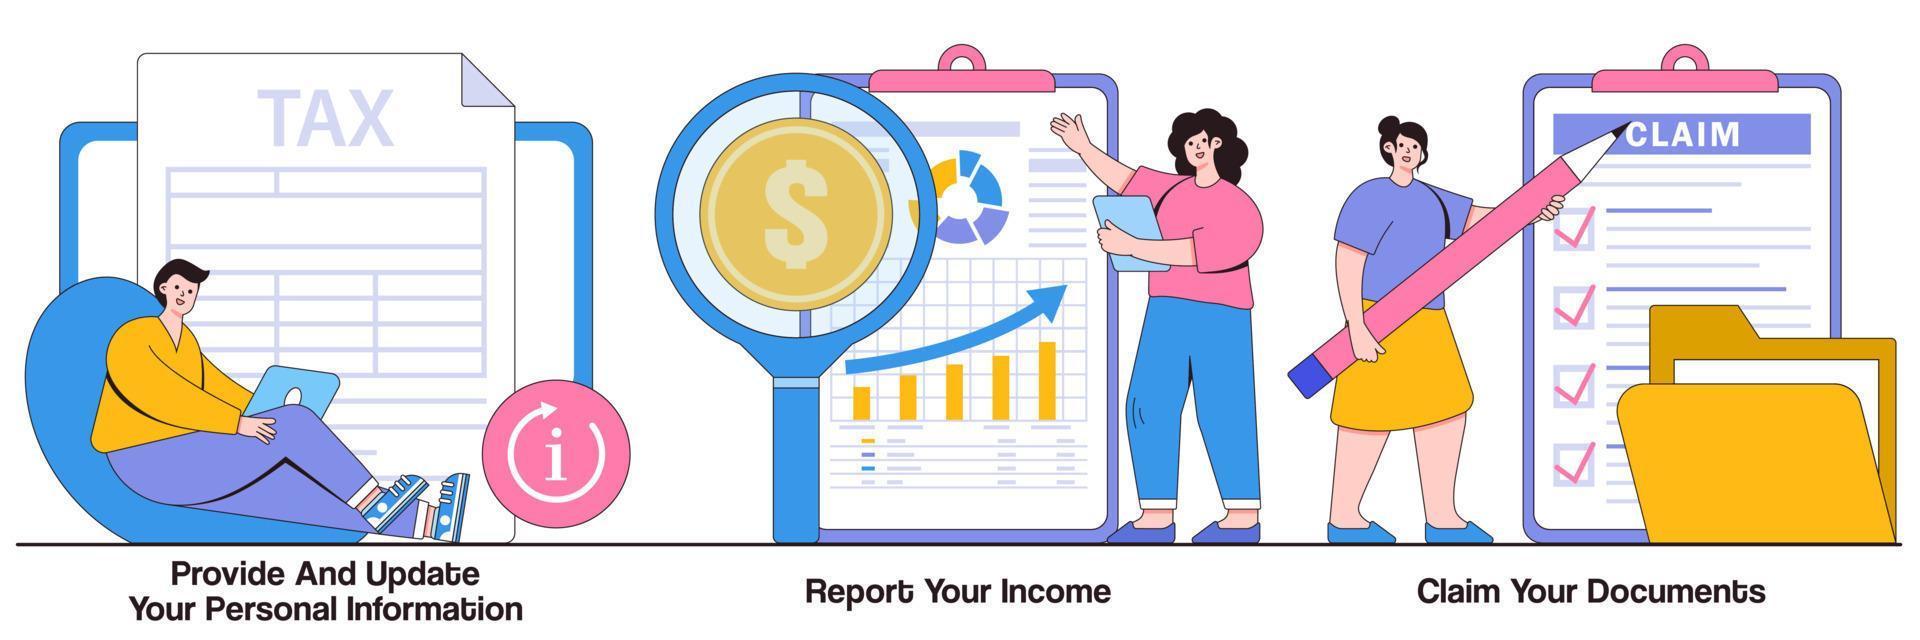 Geben Sie Ihre persönlichen Daten an und aktualisieren Sie sie, melden Sie das Einkommen, fordern Sie die illustrierten Dokumente an vektor